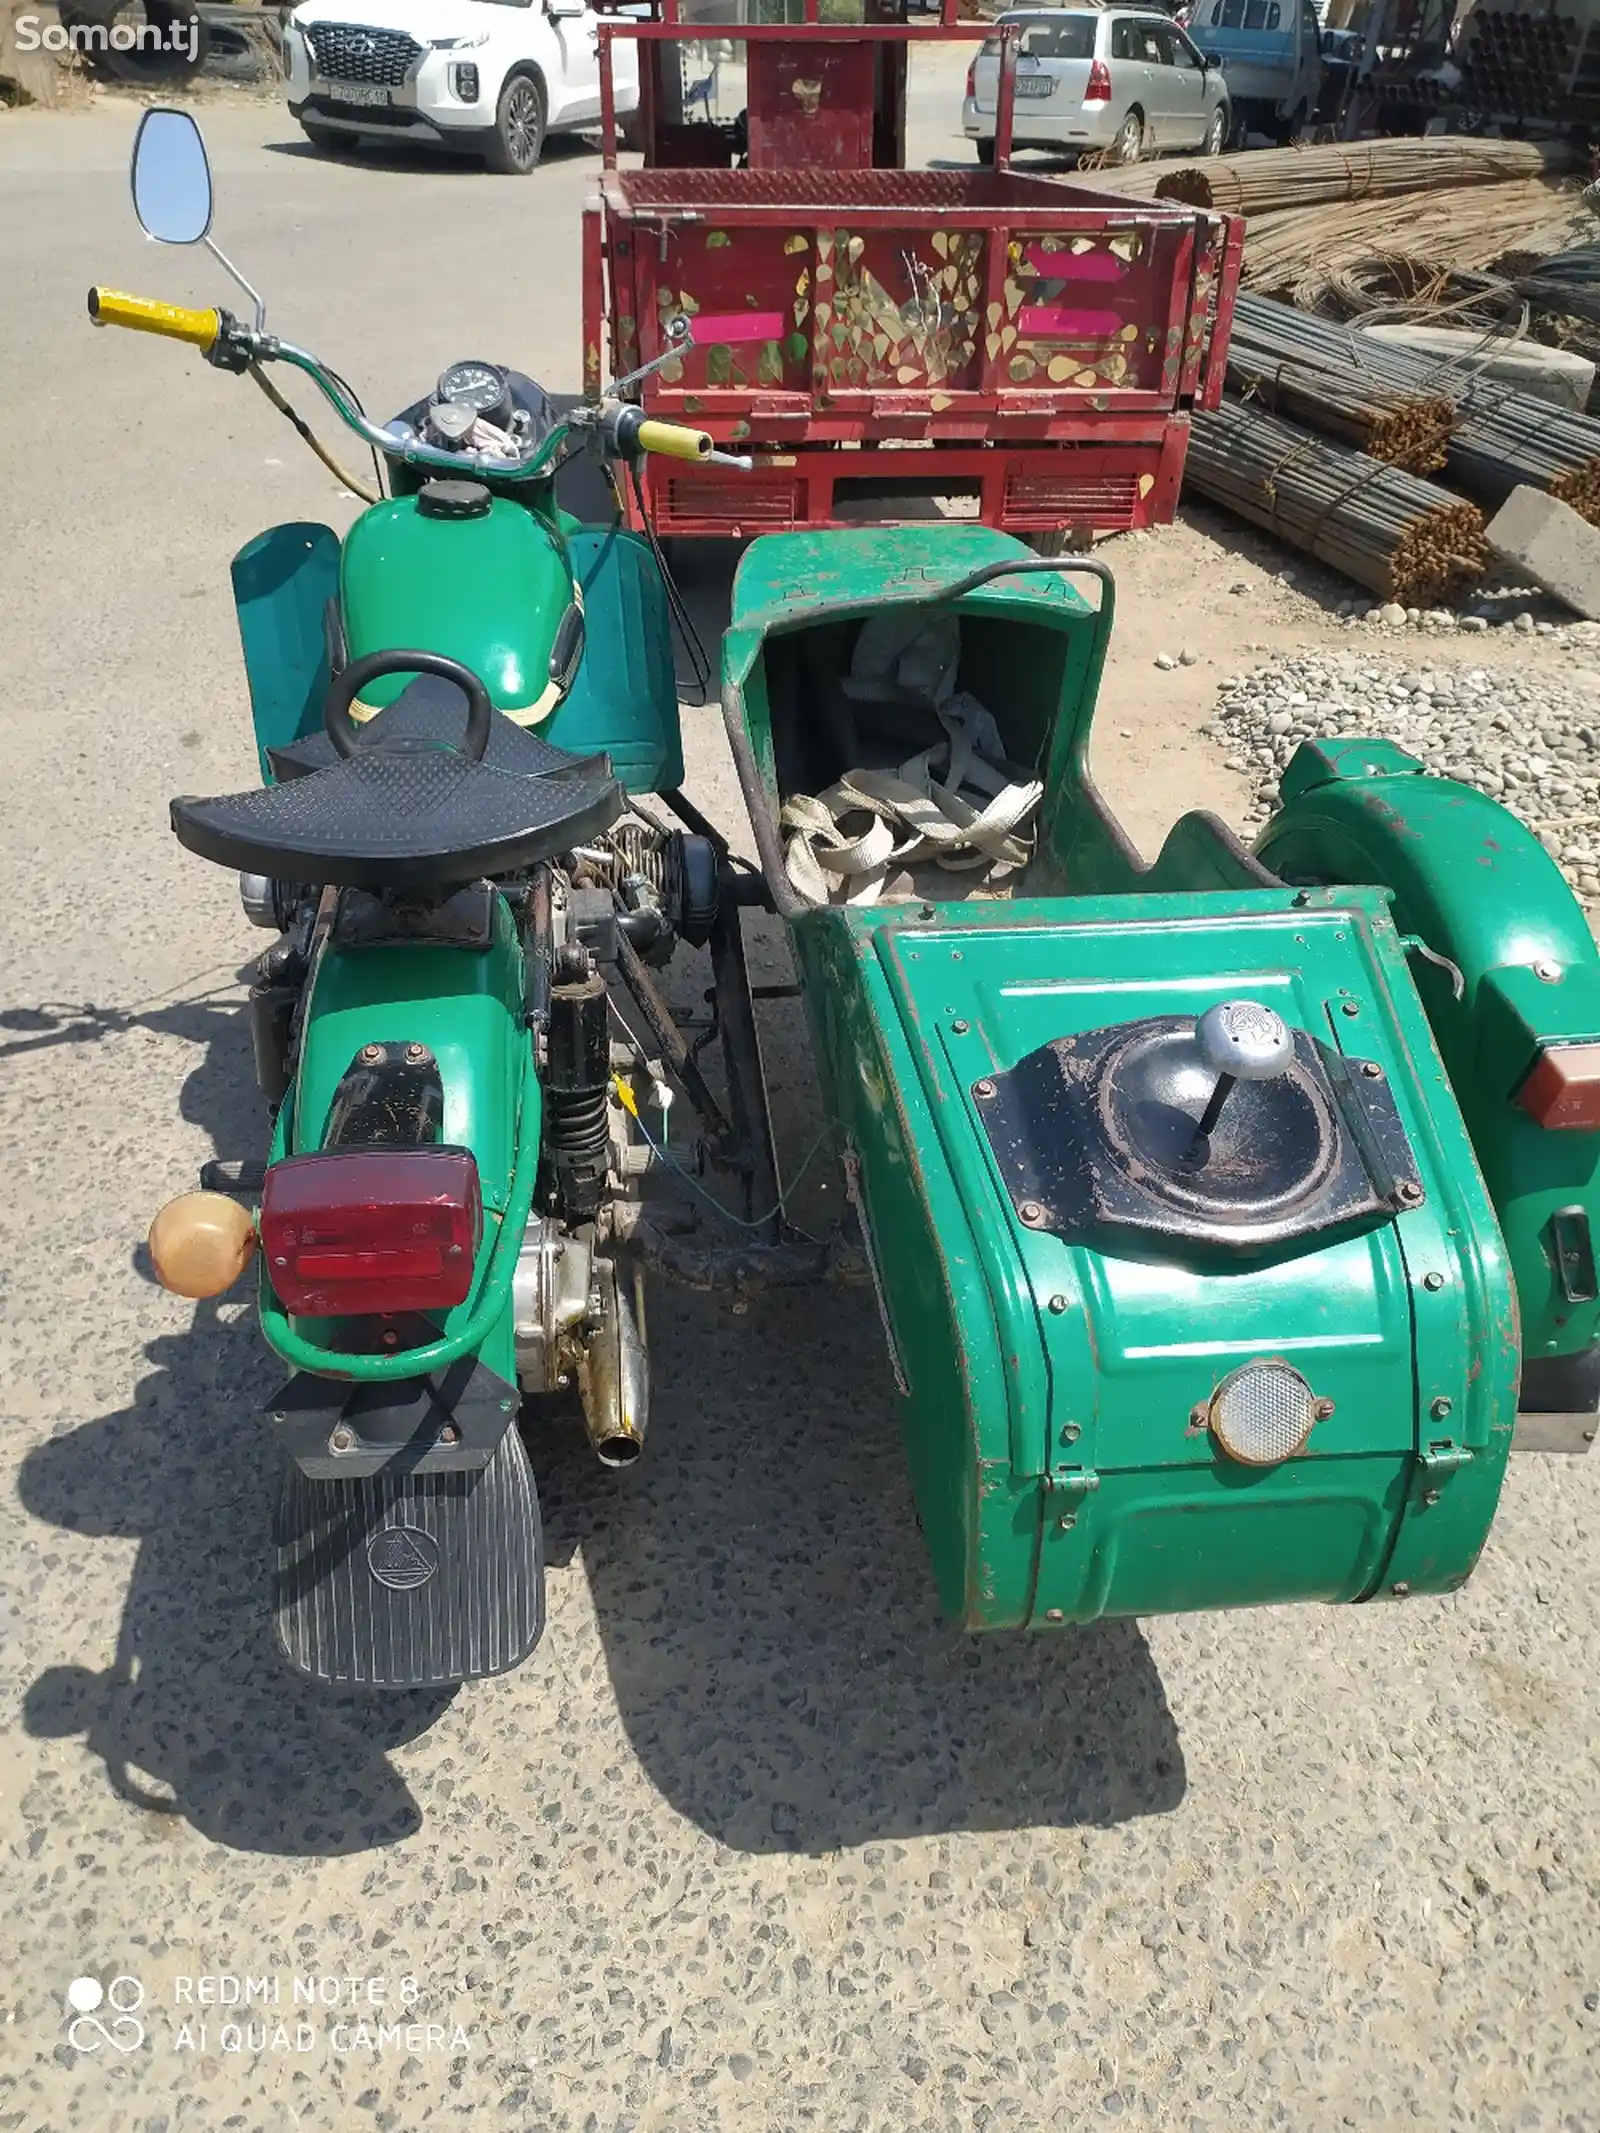 Мотоцикл Урал-2